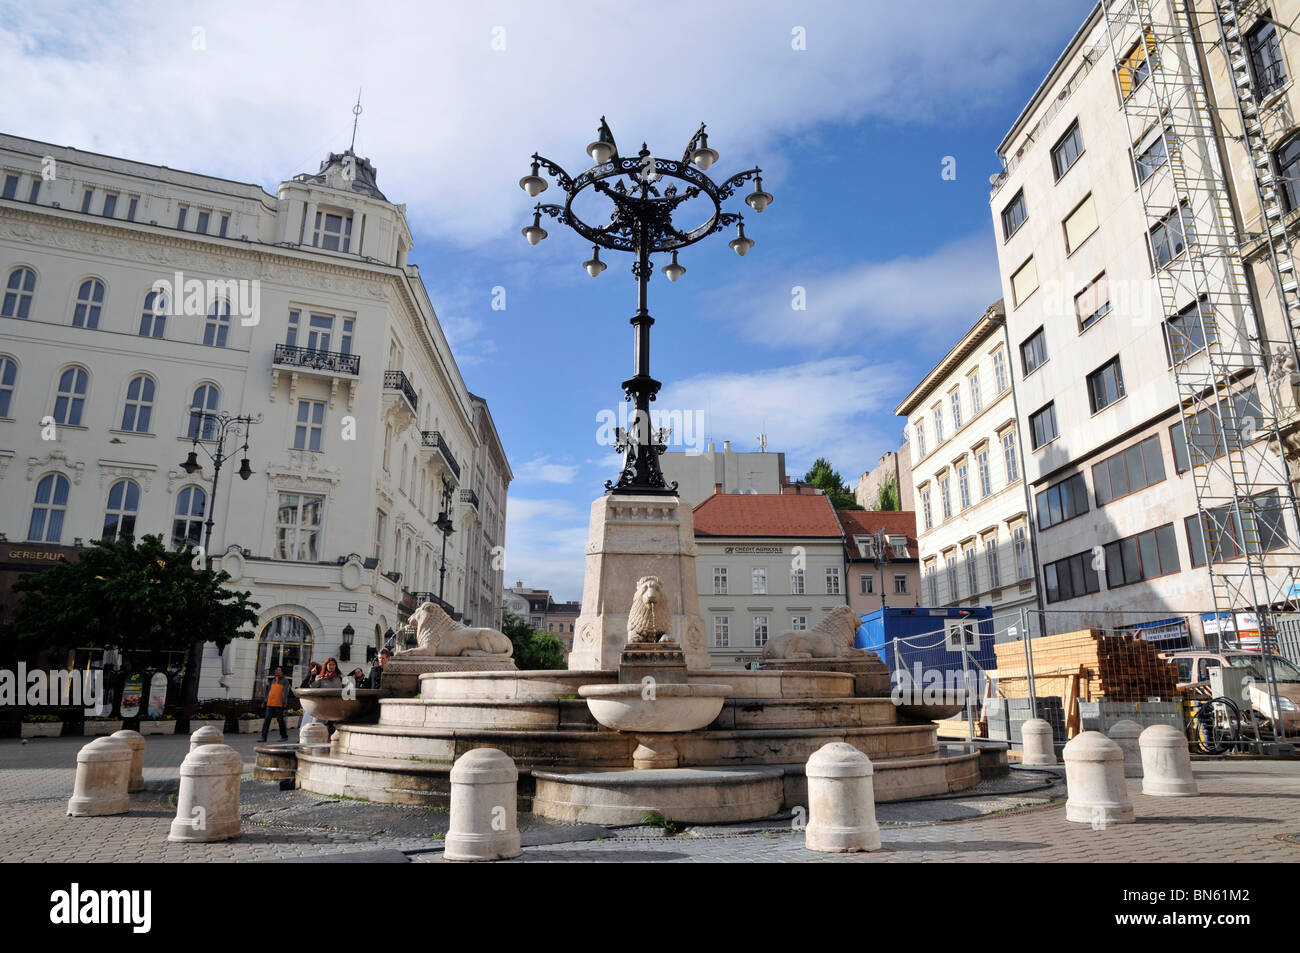 Fontaine et lampadaire avec sculpture , Budapest, Hongrie,Europa Banque D'Images